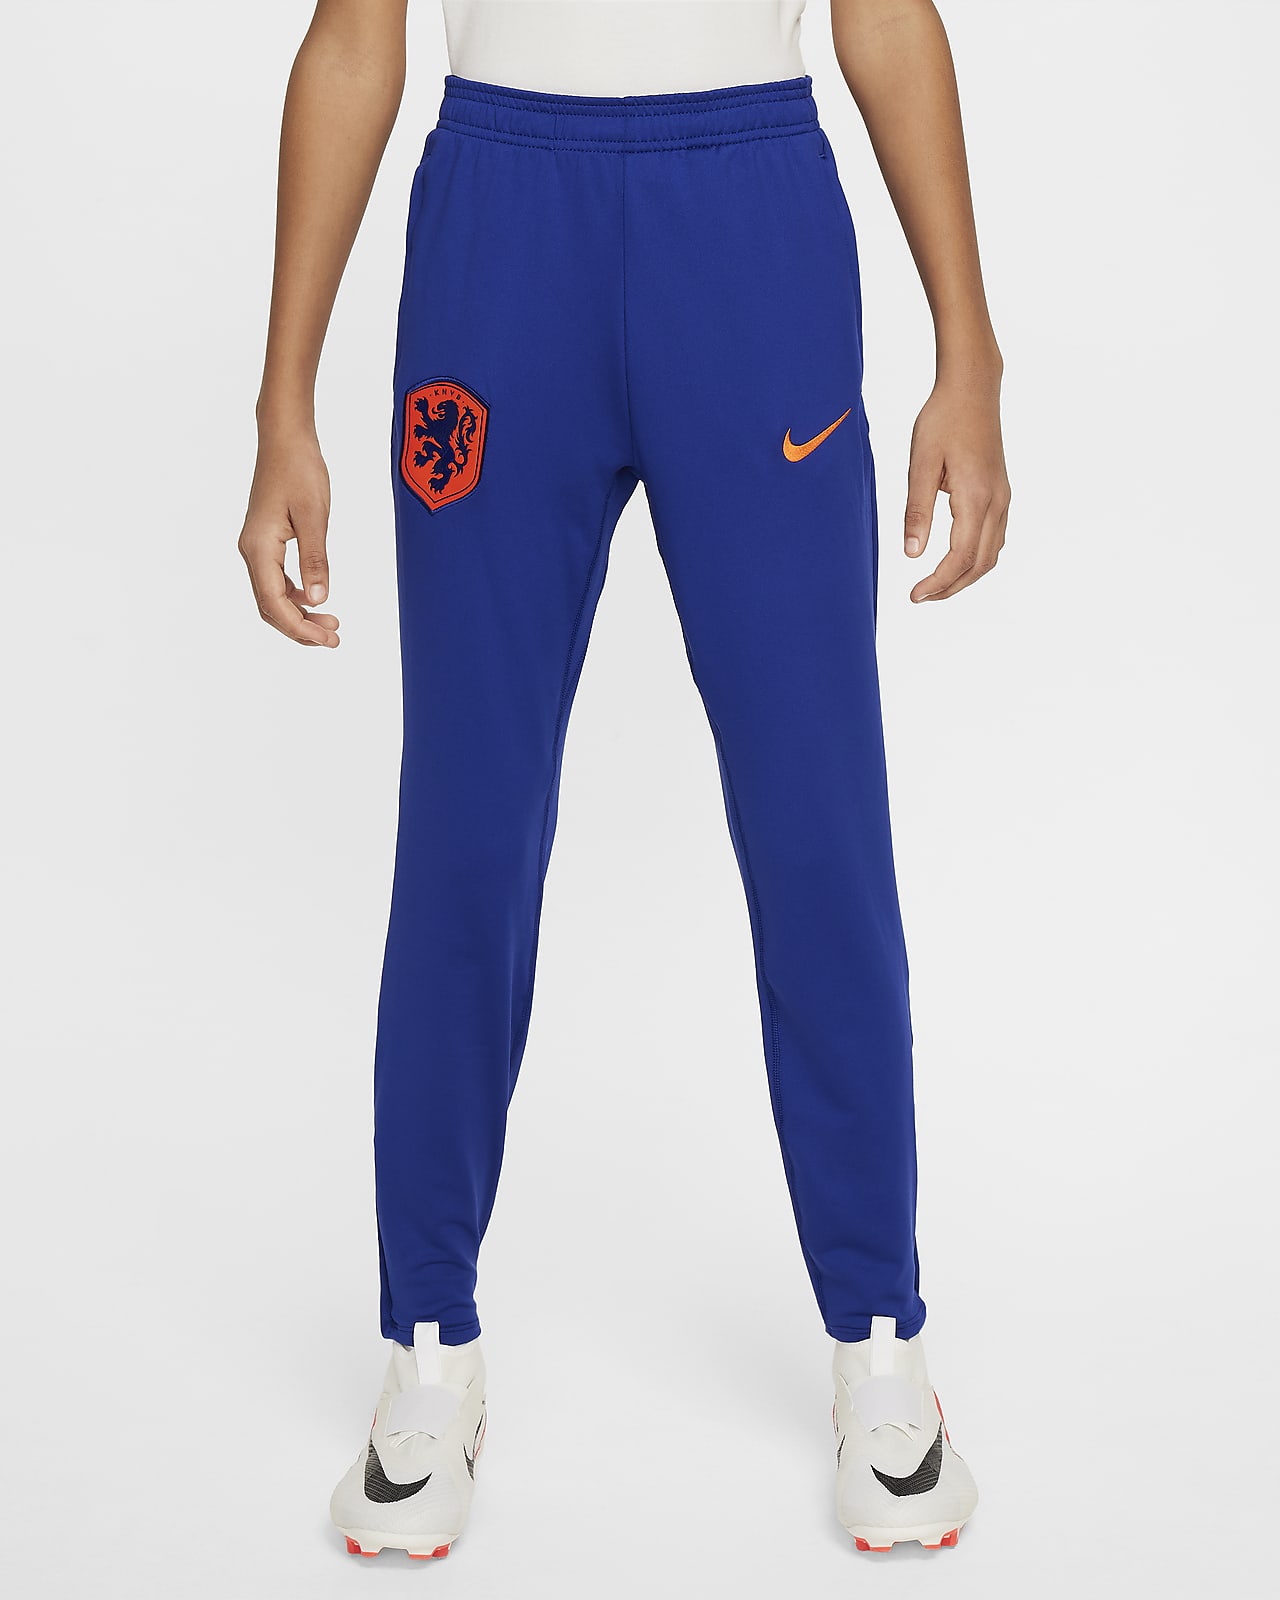 Pleteninové fotbalové kalhoty Nike Dri-FIT Nizozemsko Strike pro větší děti